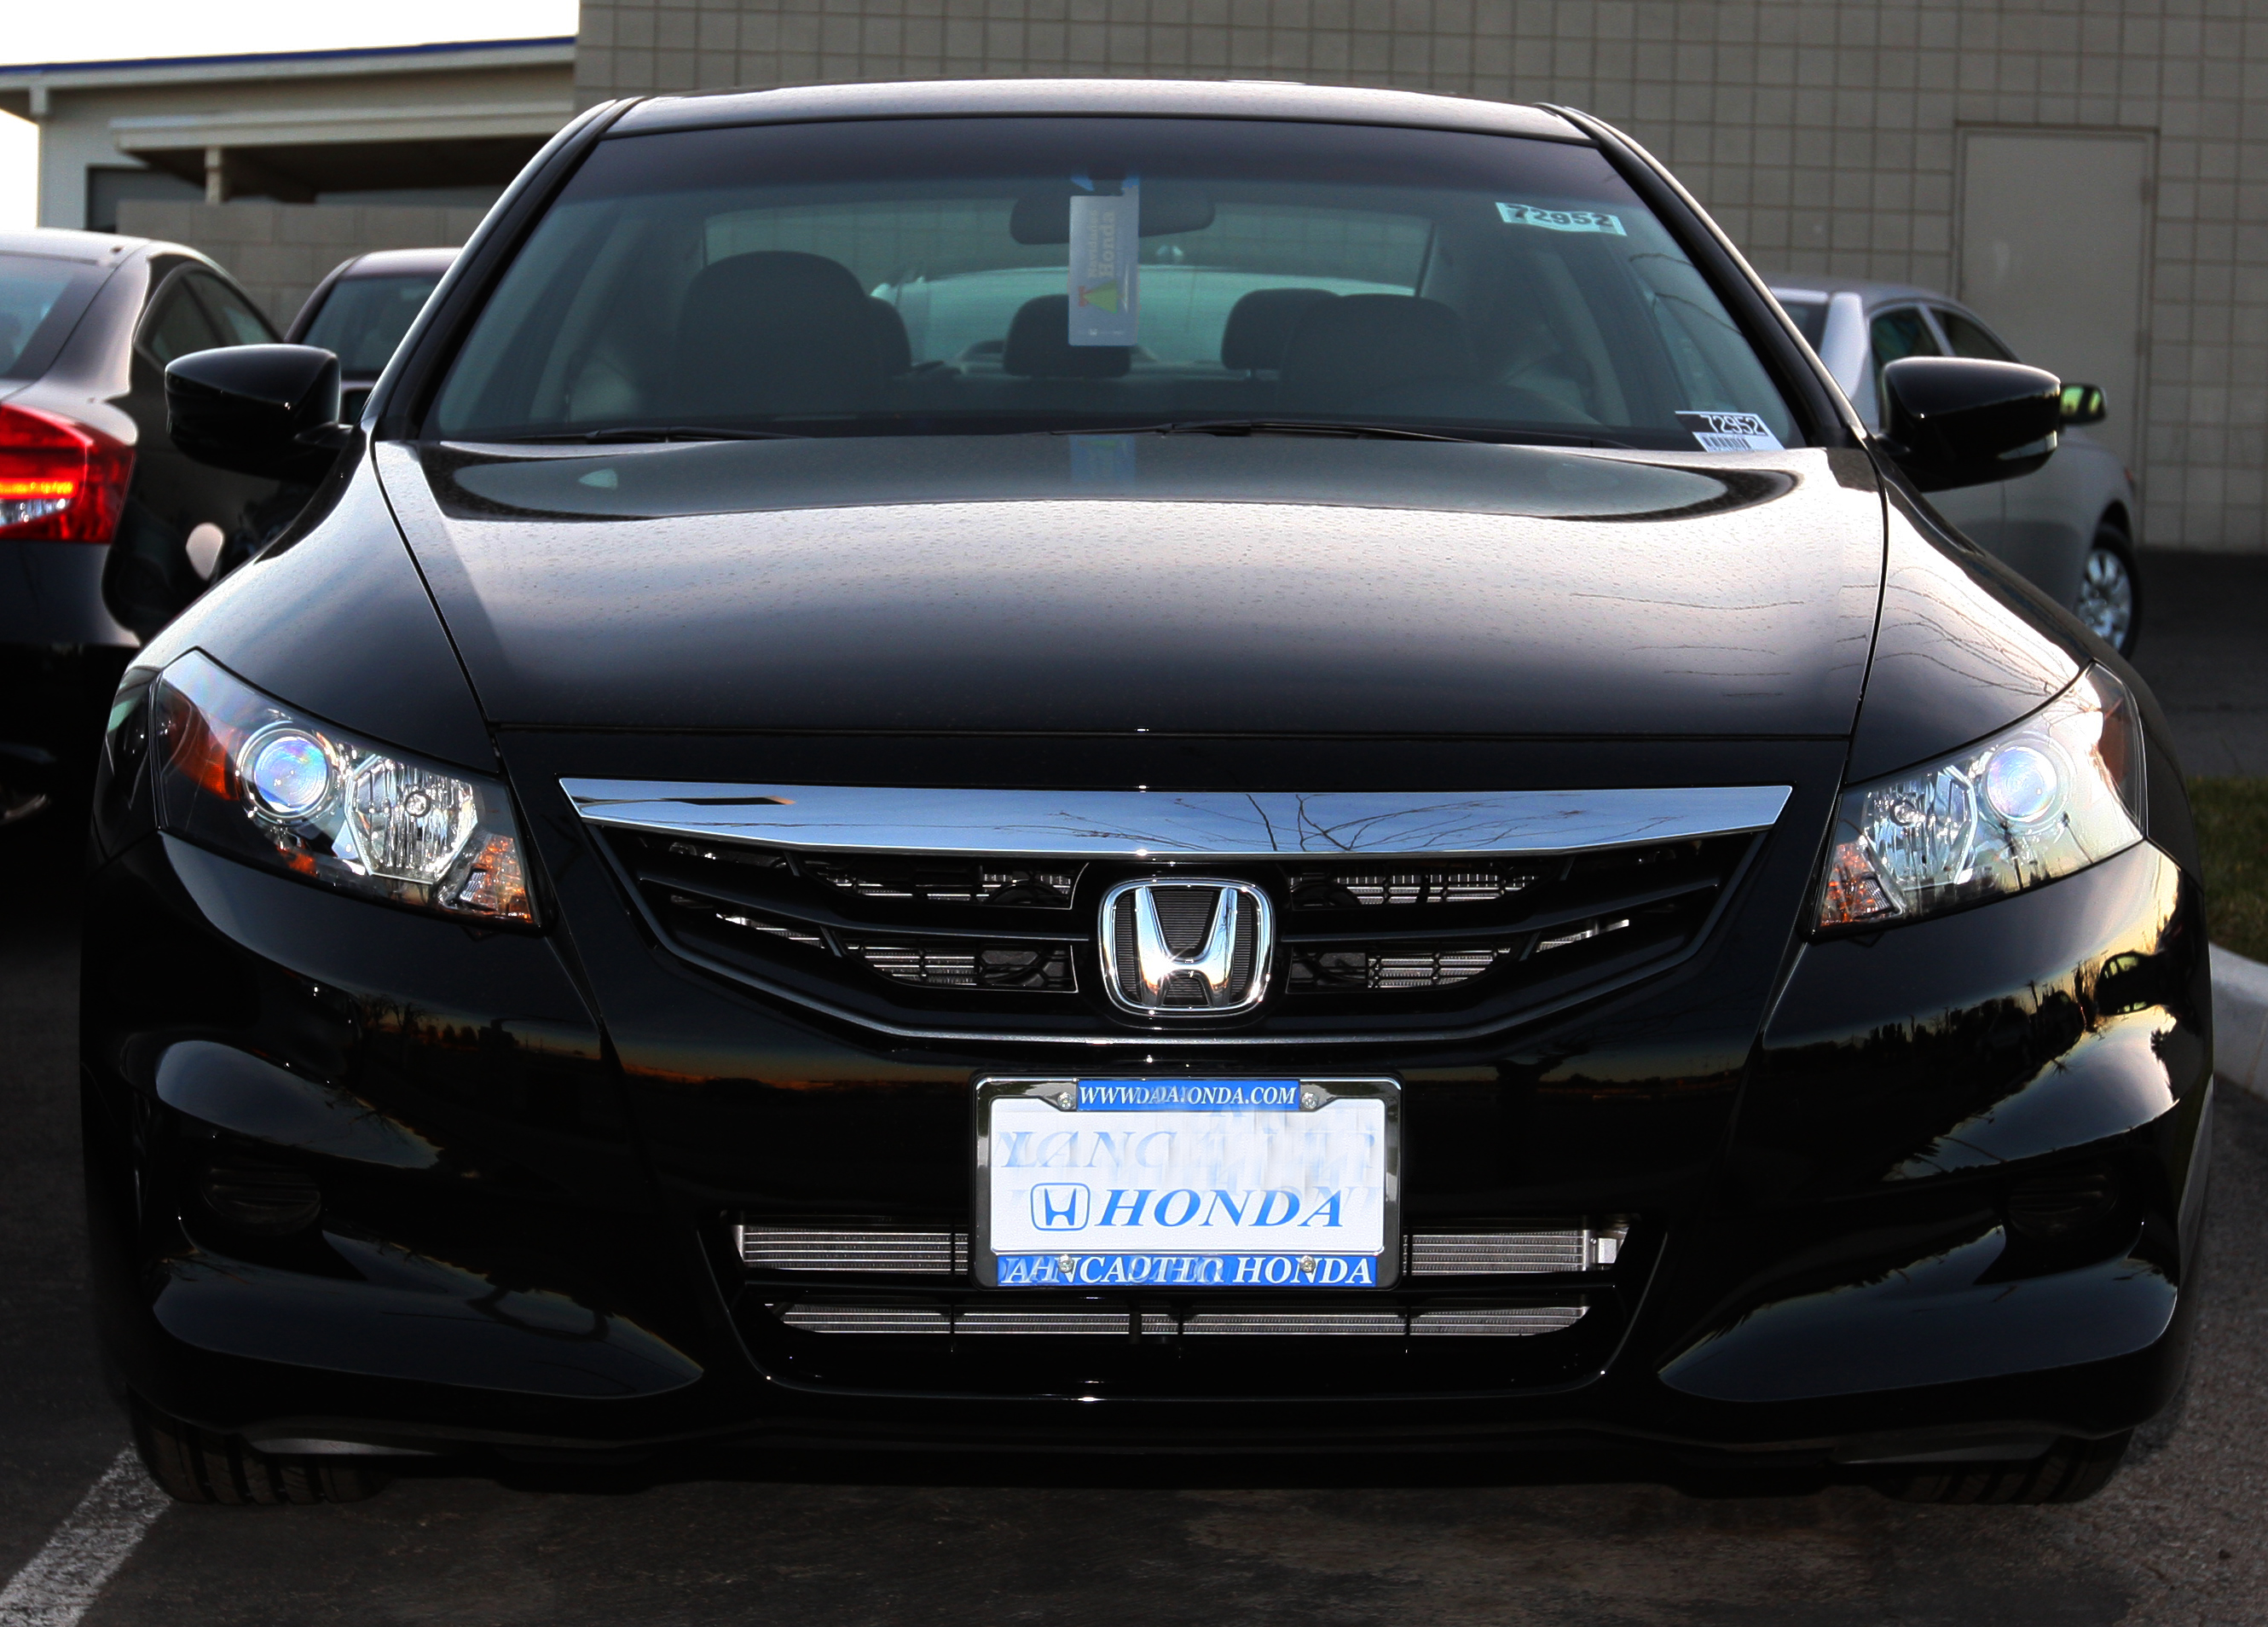 Honda Civic, The Best Choice for both Honda 2011 Sedan & Coupe #5